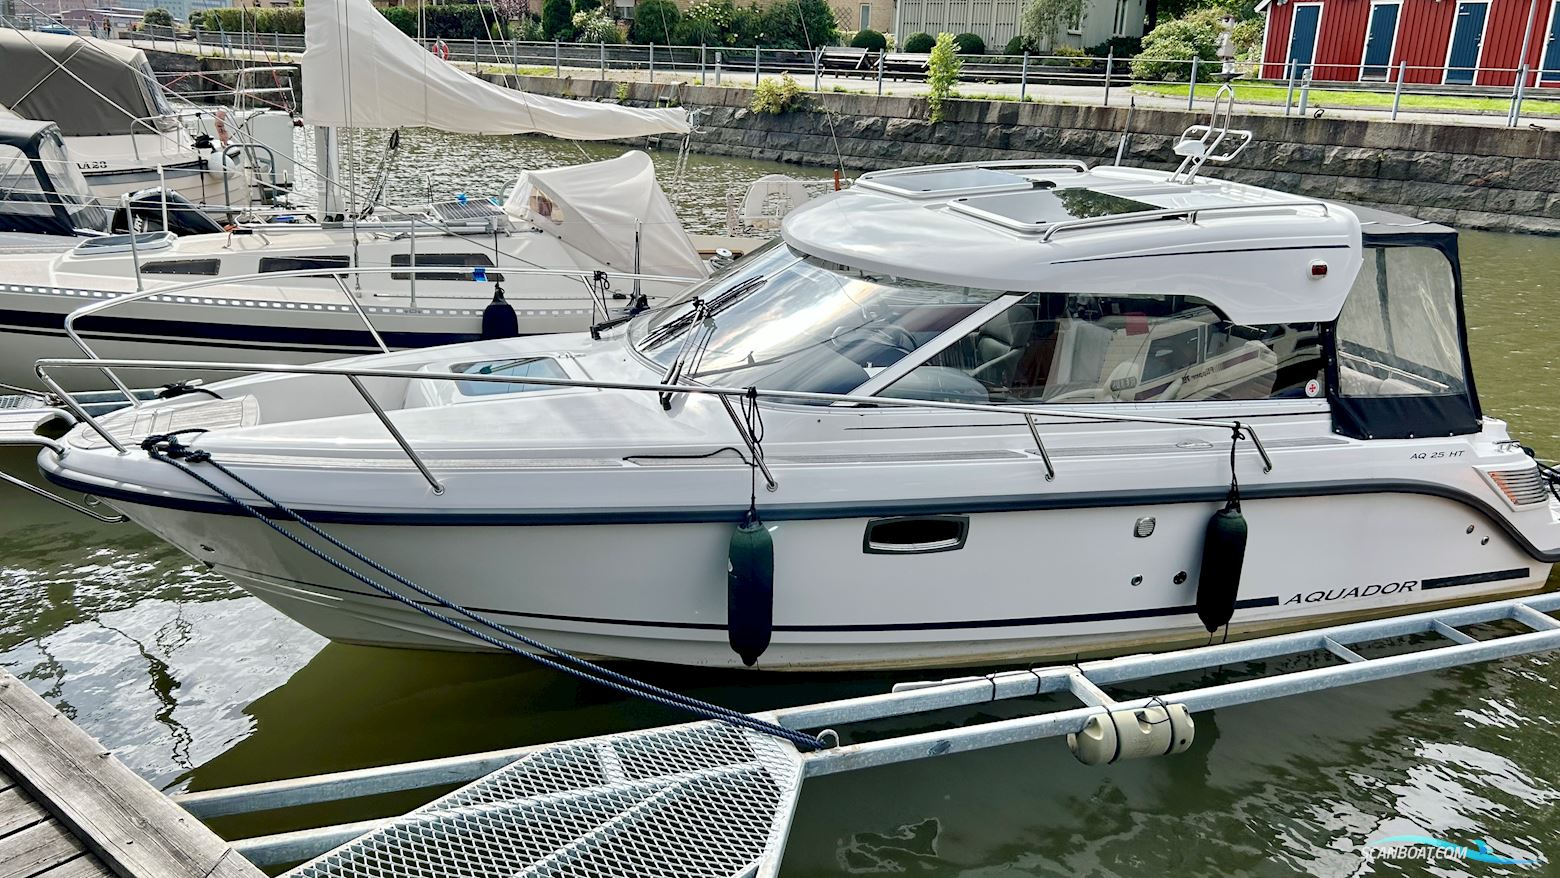 Aquador 25 HT Motorbåt 2019, med Mercruiser motor, Sverige